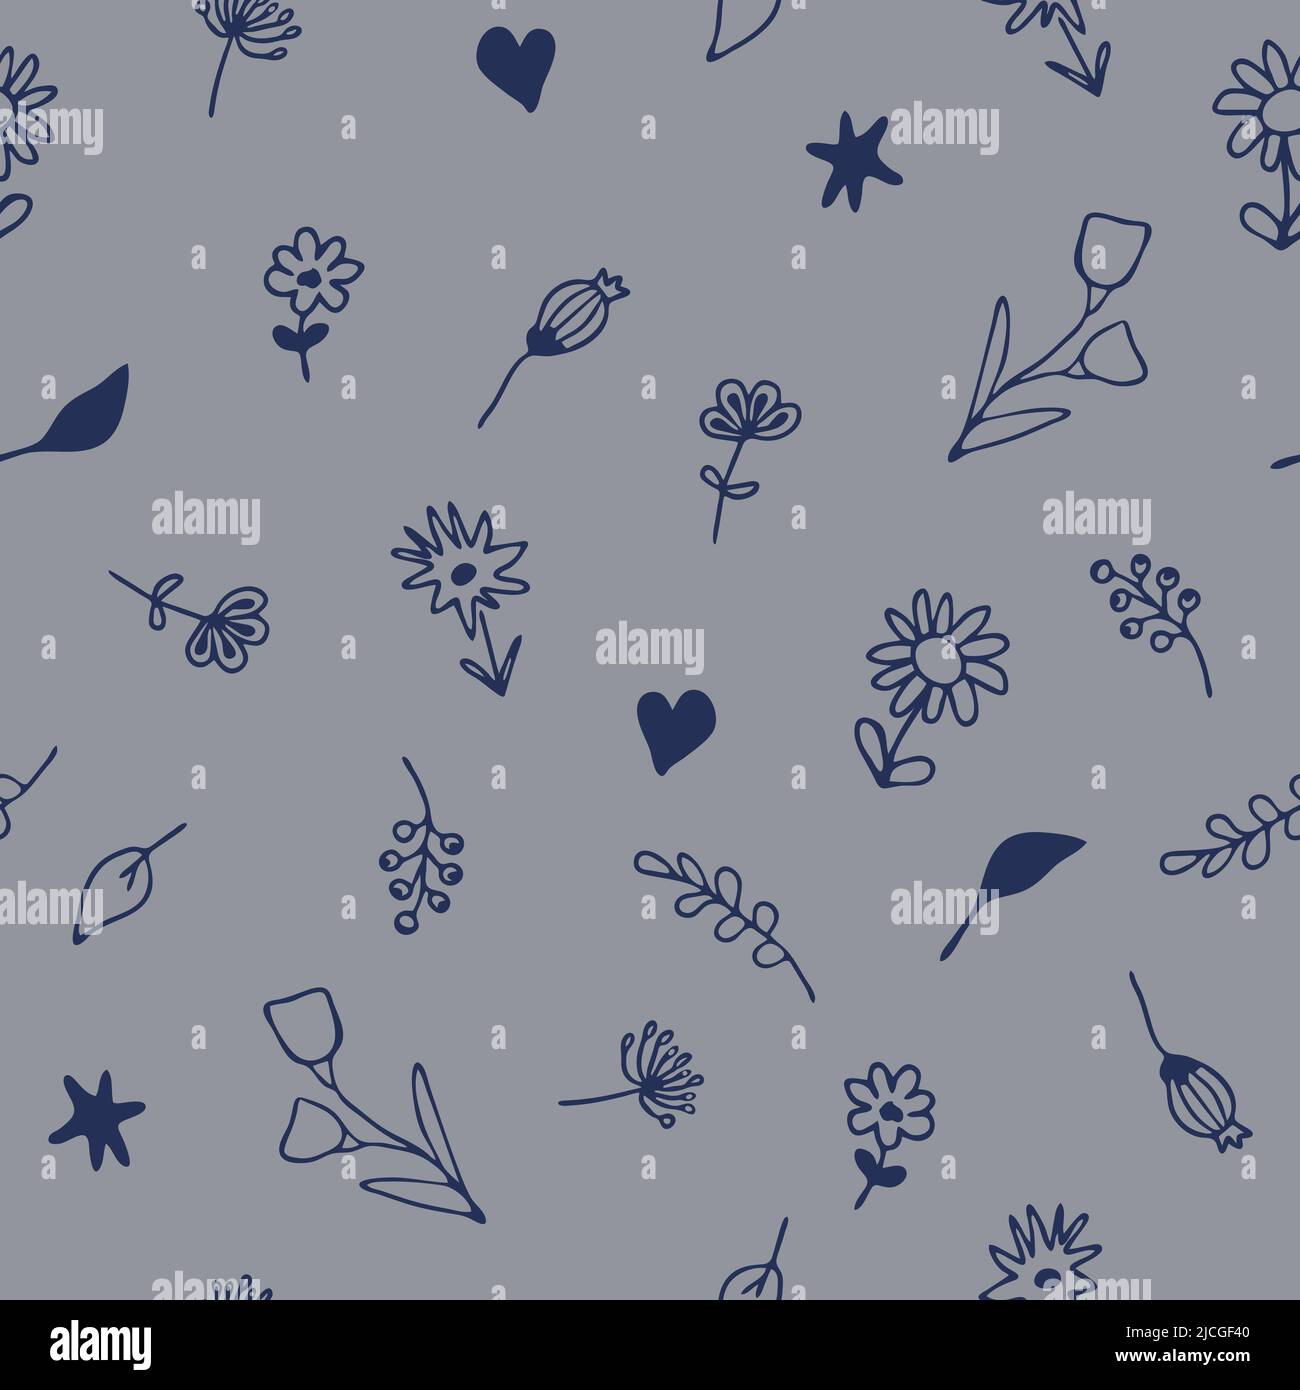 Nahtloses Vektor-Muster mit einfachen Blumen auf blauem Hintergrund. Florales Strukturtapete-Design. Schöne Sommer Wiese Mode Textil. Stock Vektor